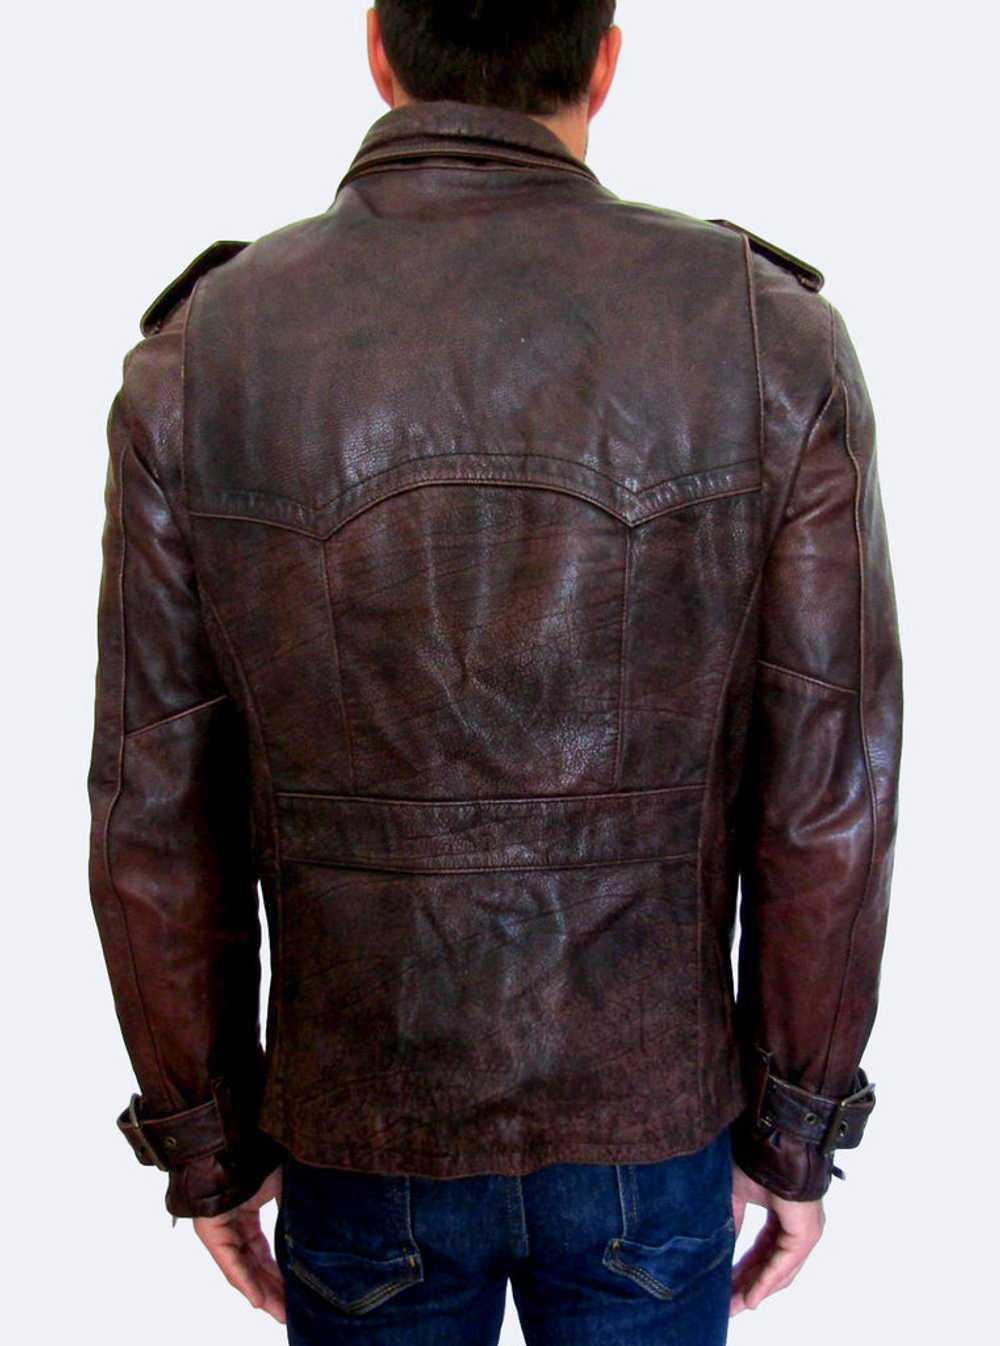 Just Cavalli Distressed Leather Jacket - image 2